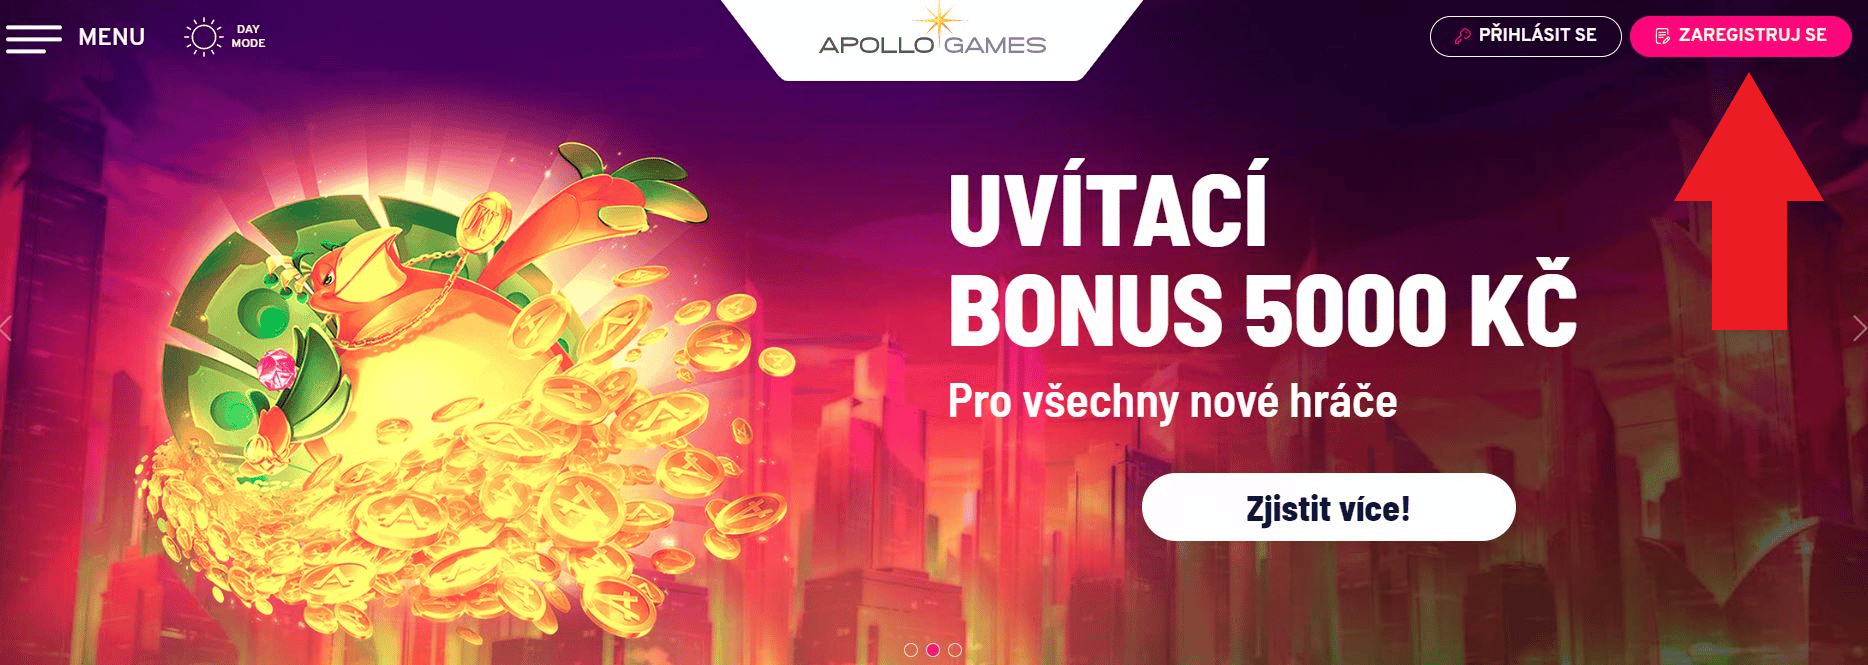 Apollo Games registrace bonus